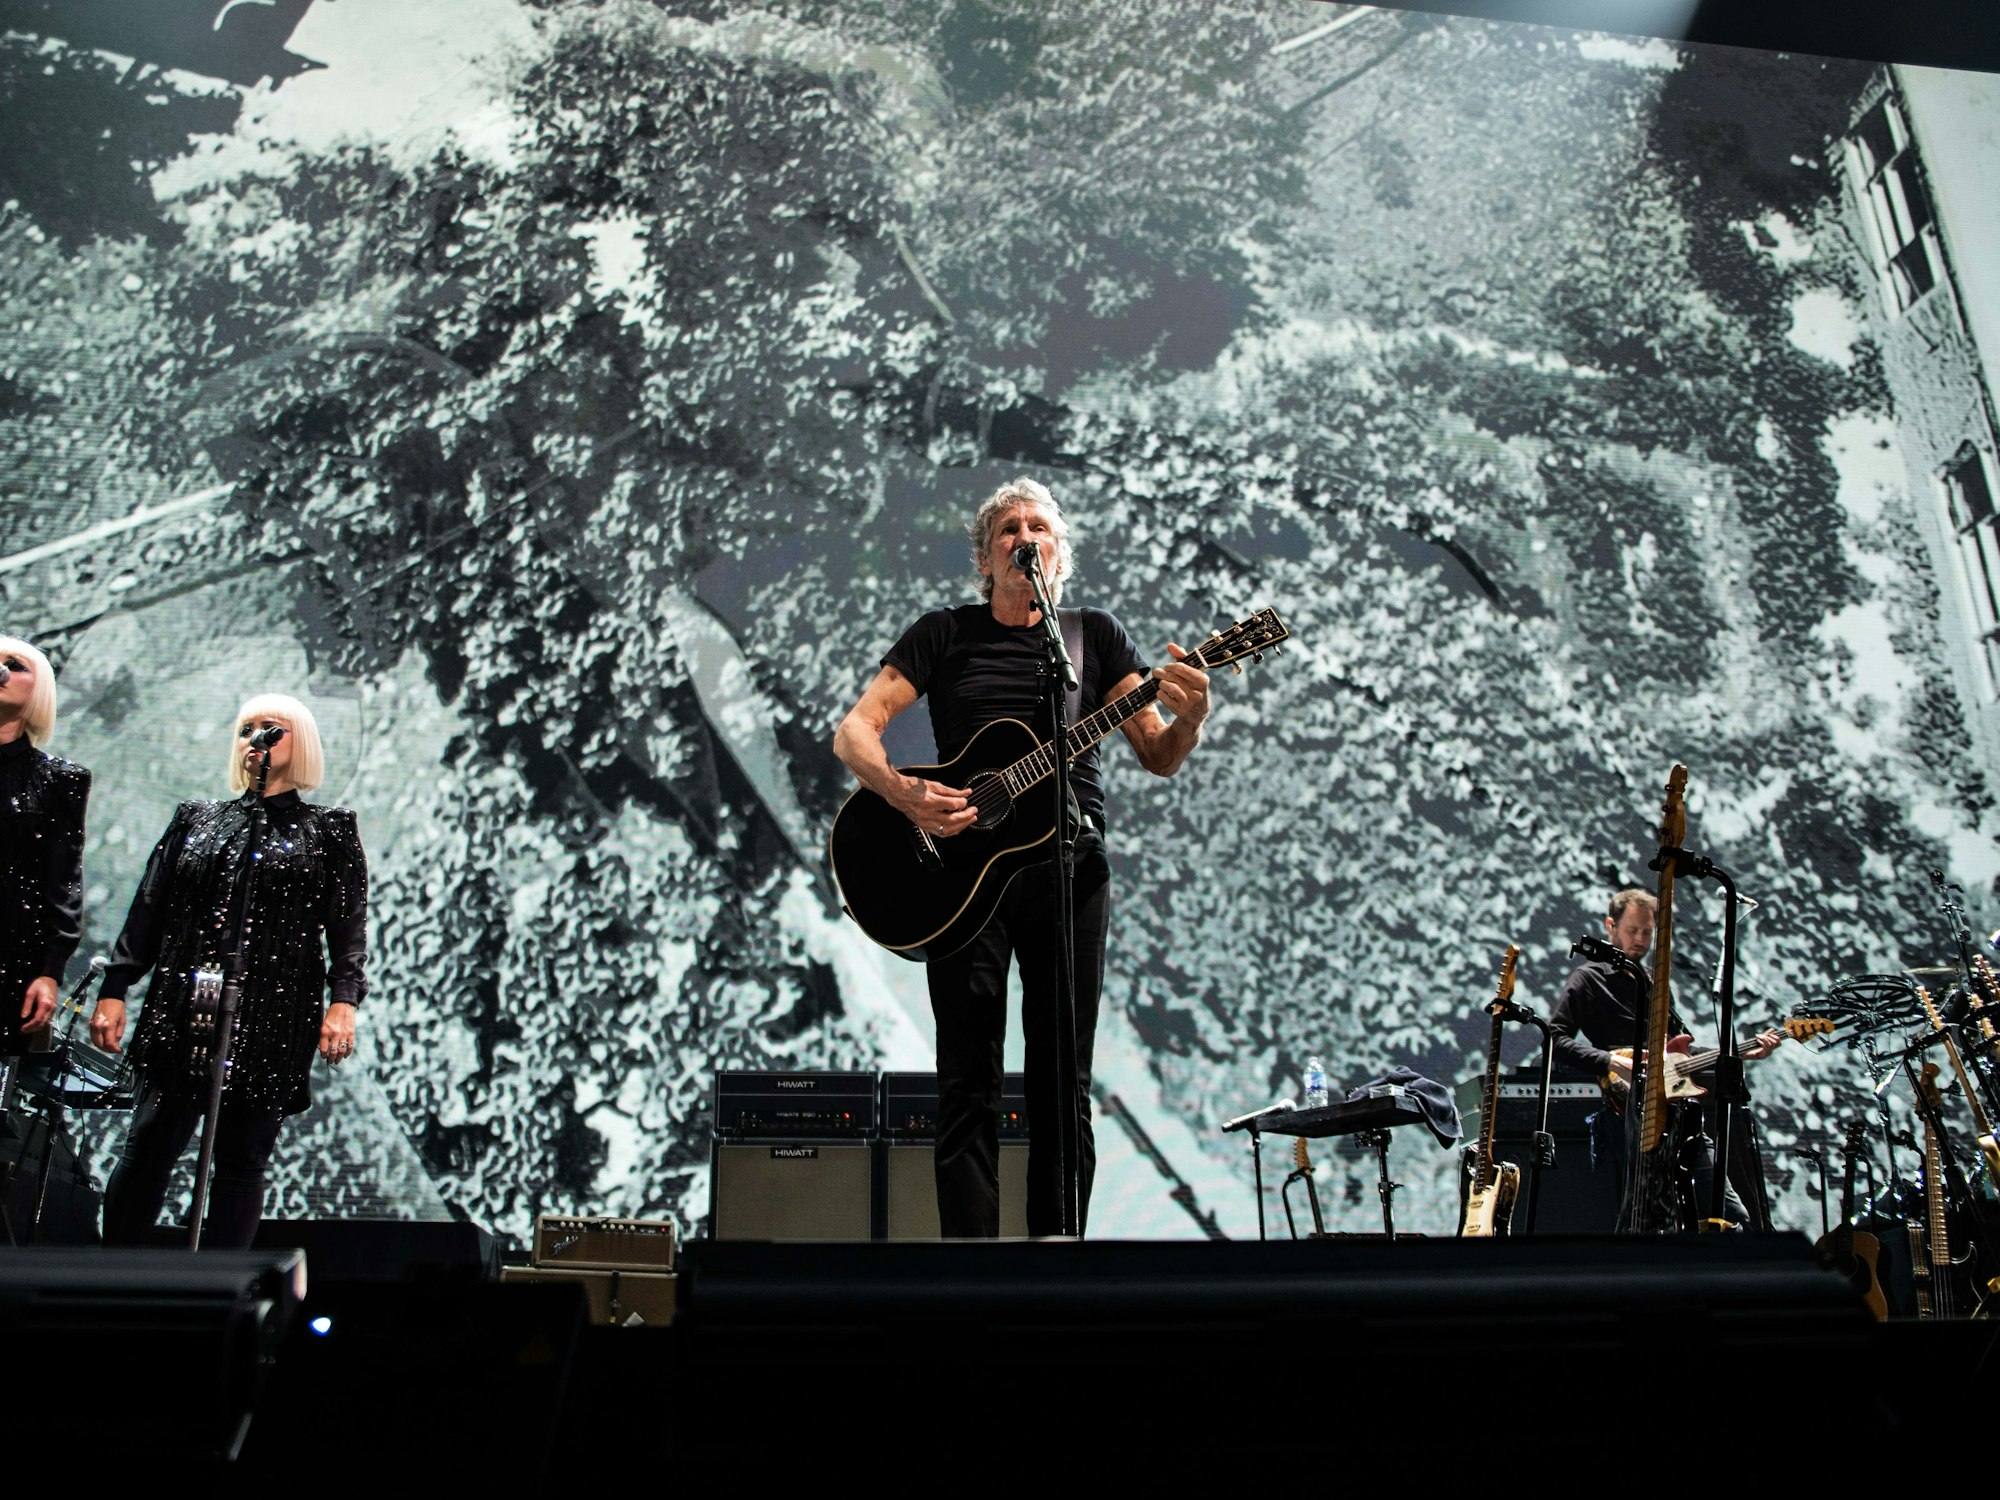 Roger Waters steht mit Gitarre auf der Bühne in Glasgow und singt bei einem Konzert.